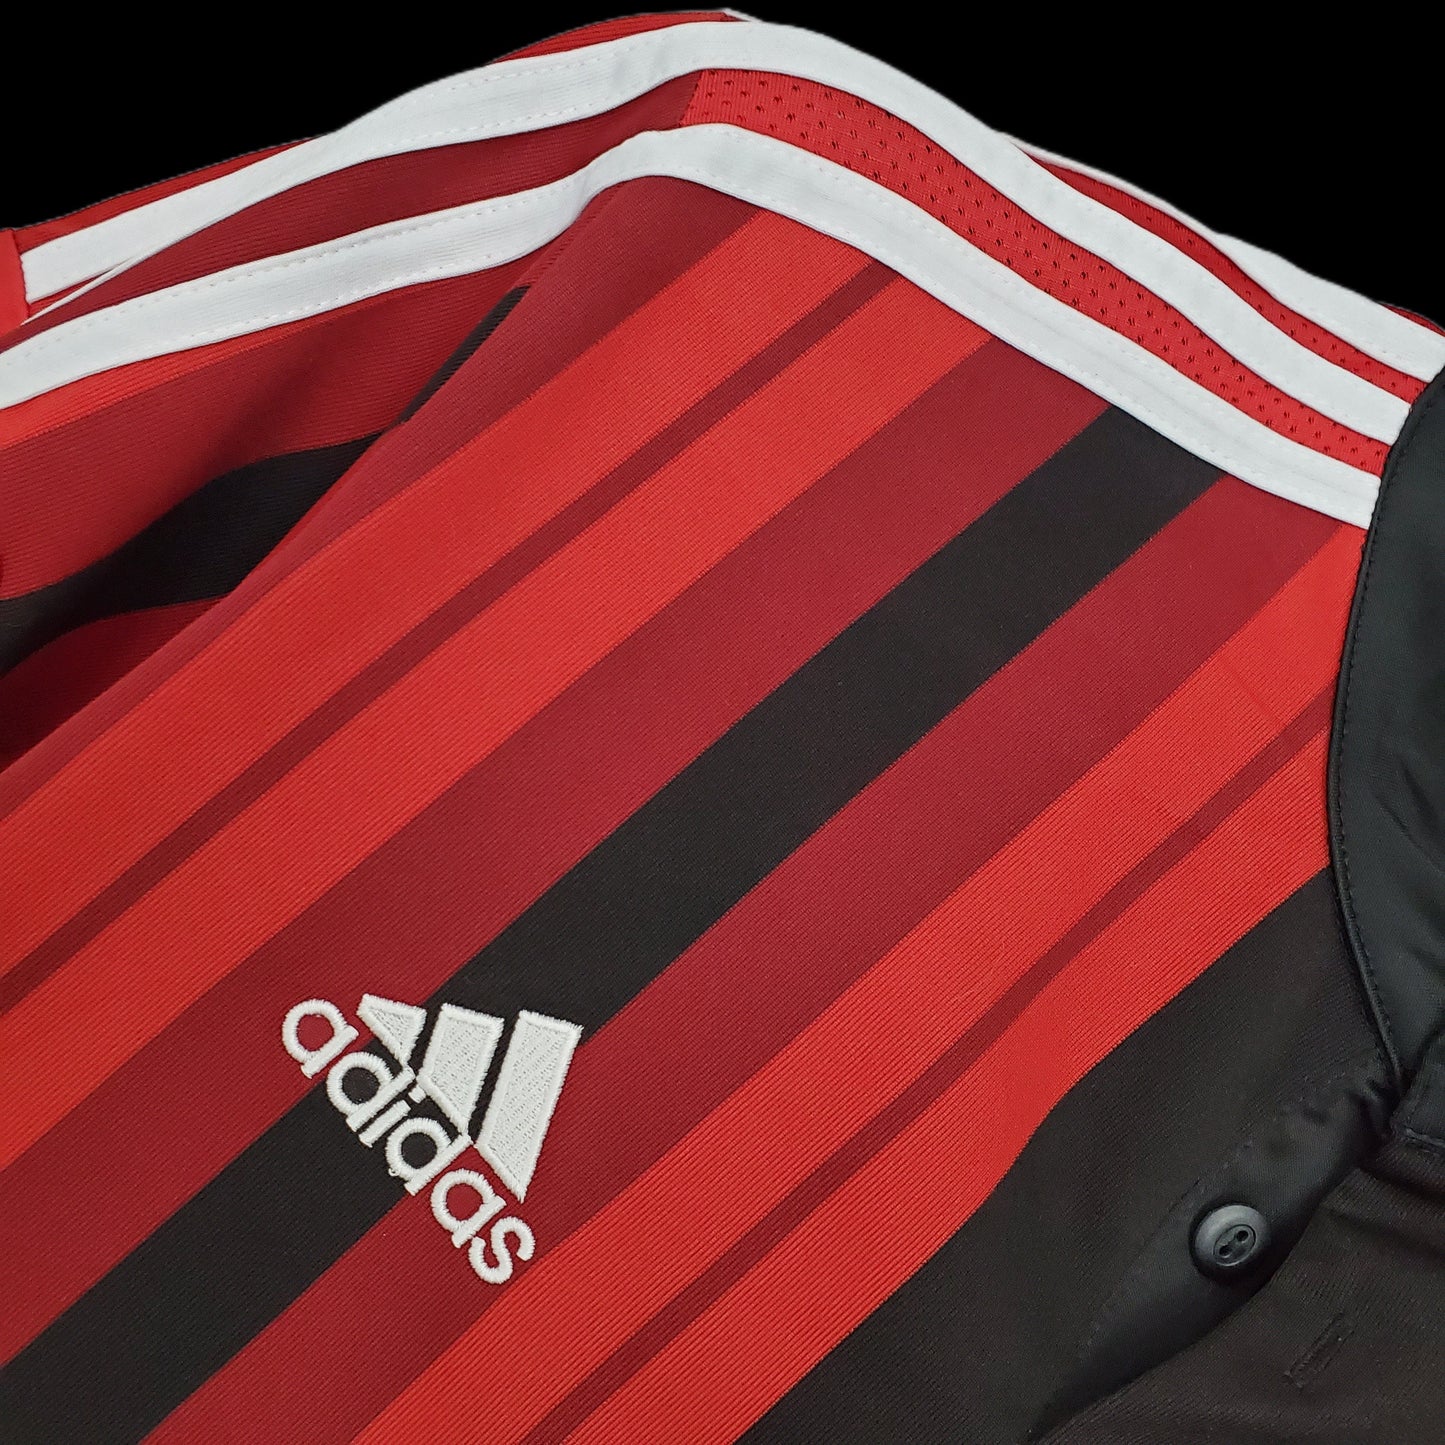 Retro AC Milan 14/15 Home Shirt Kit